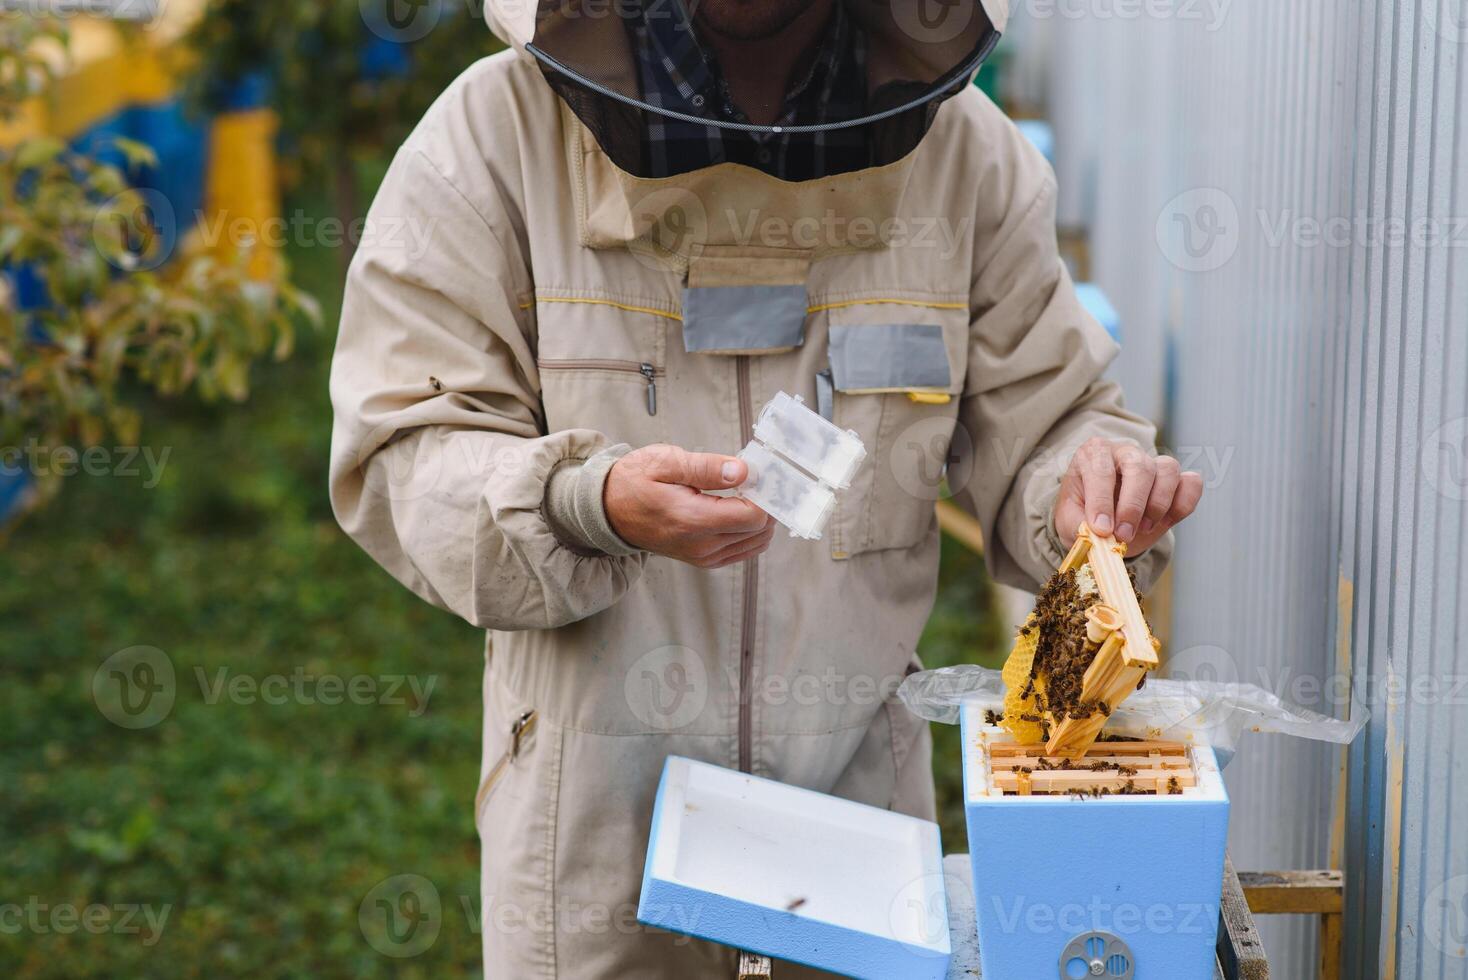 apicultor é trabalhando com abelhas e colmeias em apiário. abelhas em favo de mel. quadros do abelha colmeia. apicultura. mel. saudável Comida. natural produtos. foto